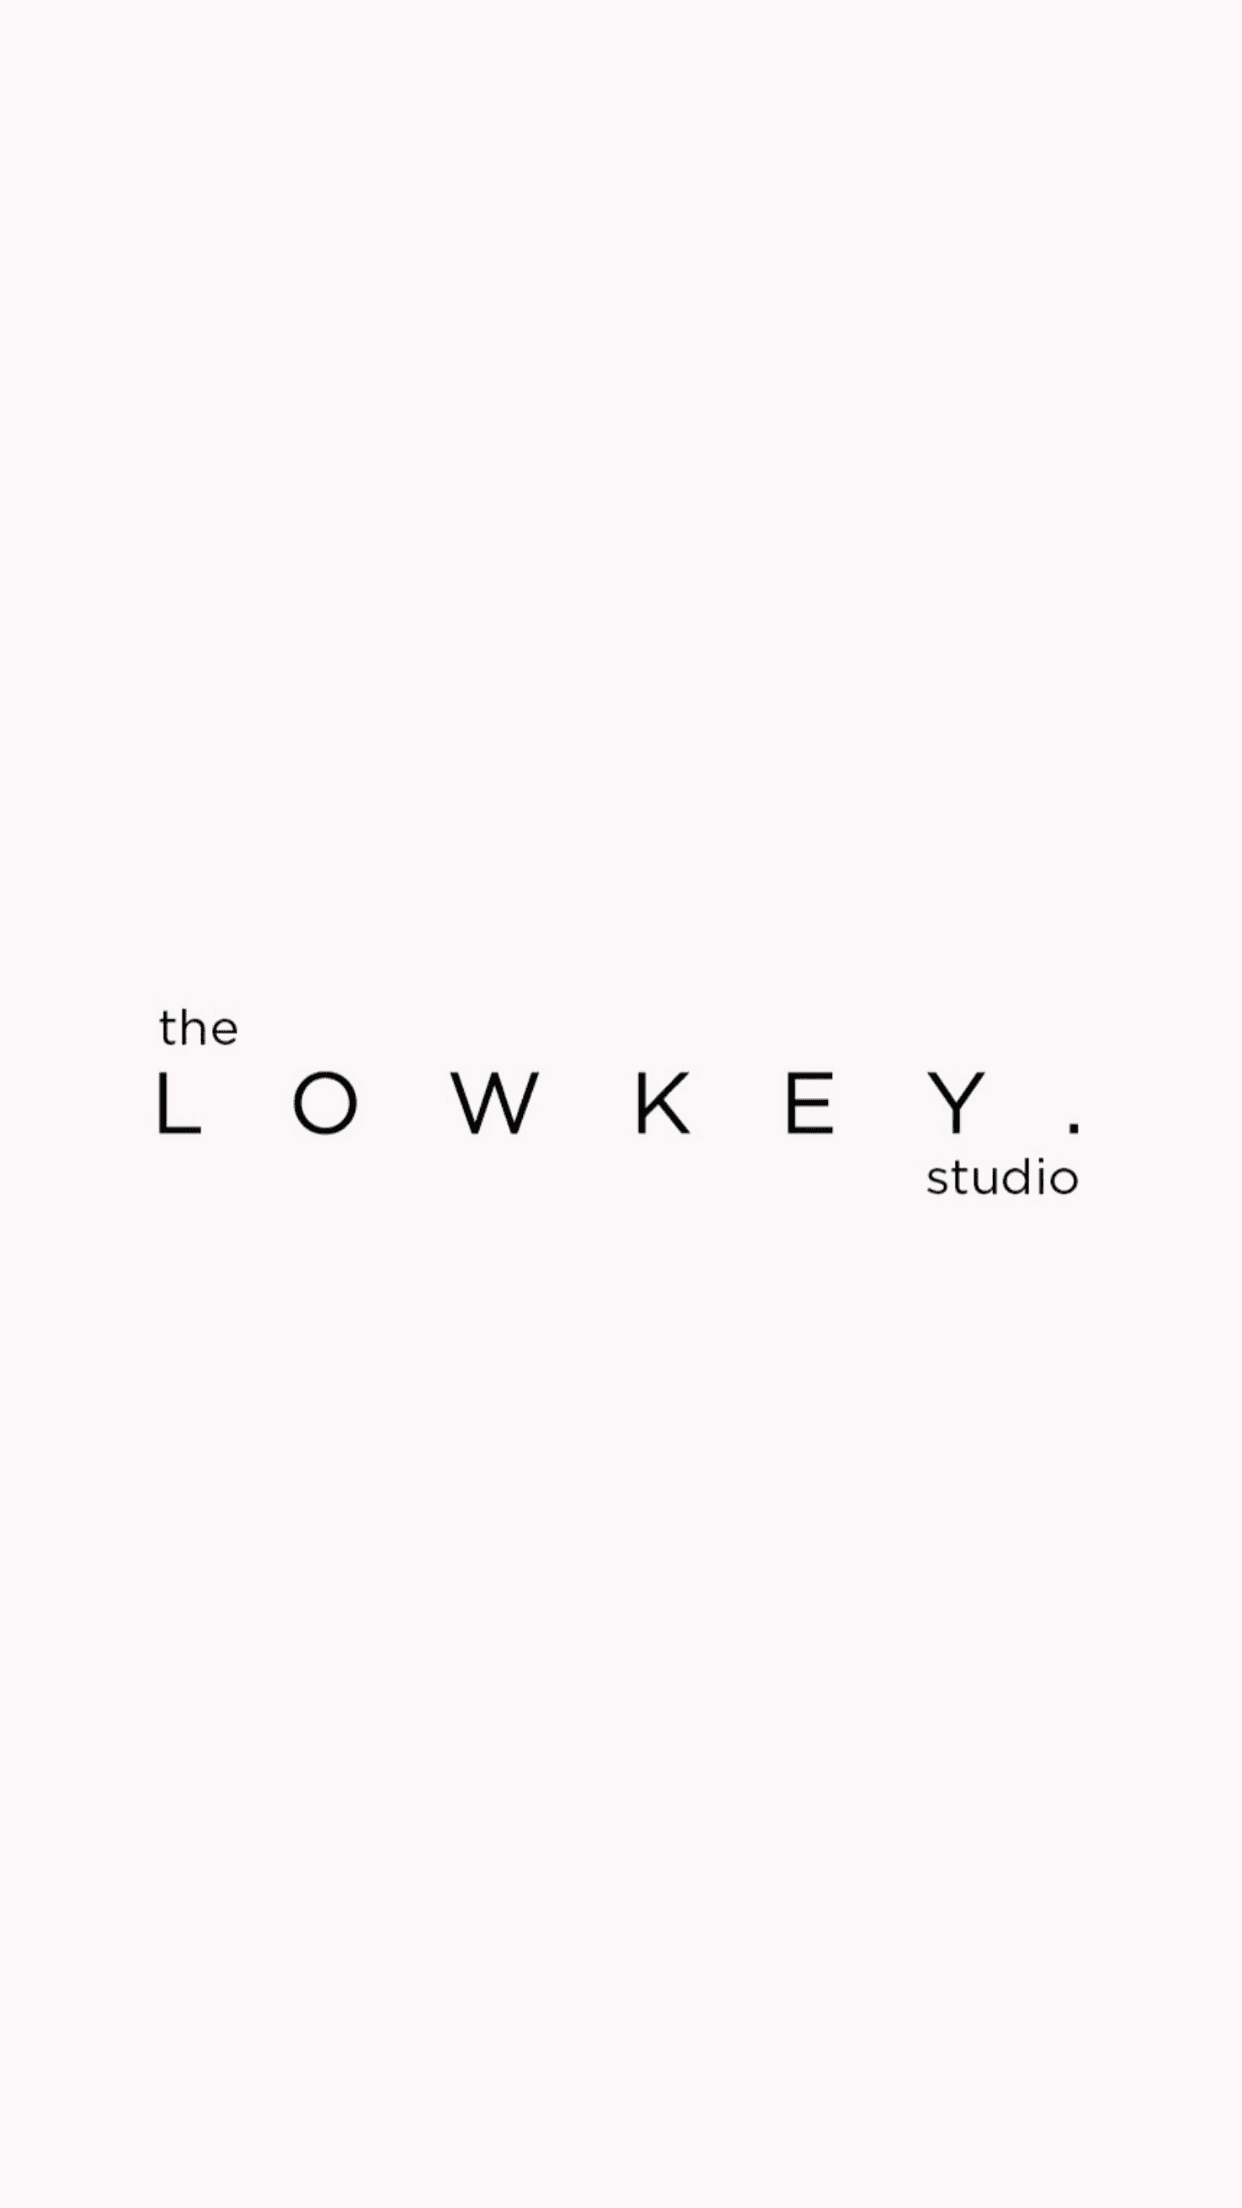 TheLowkeyStudio